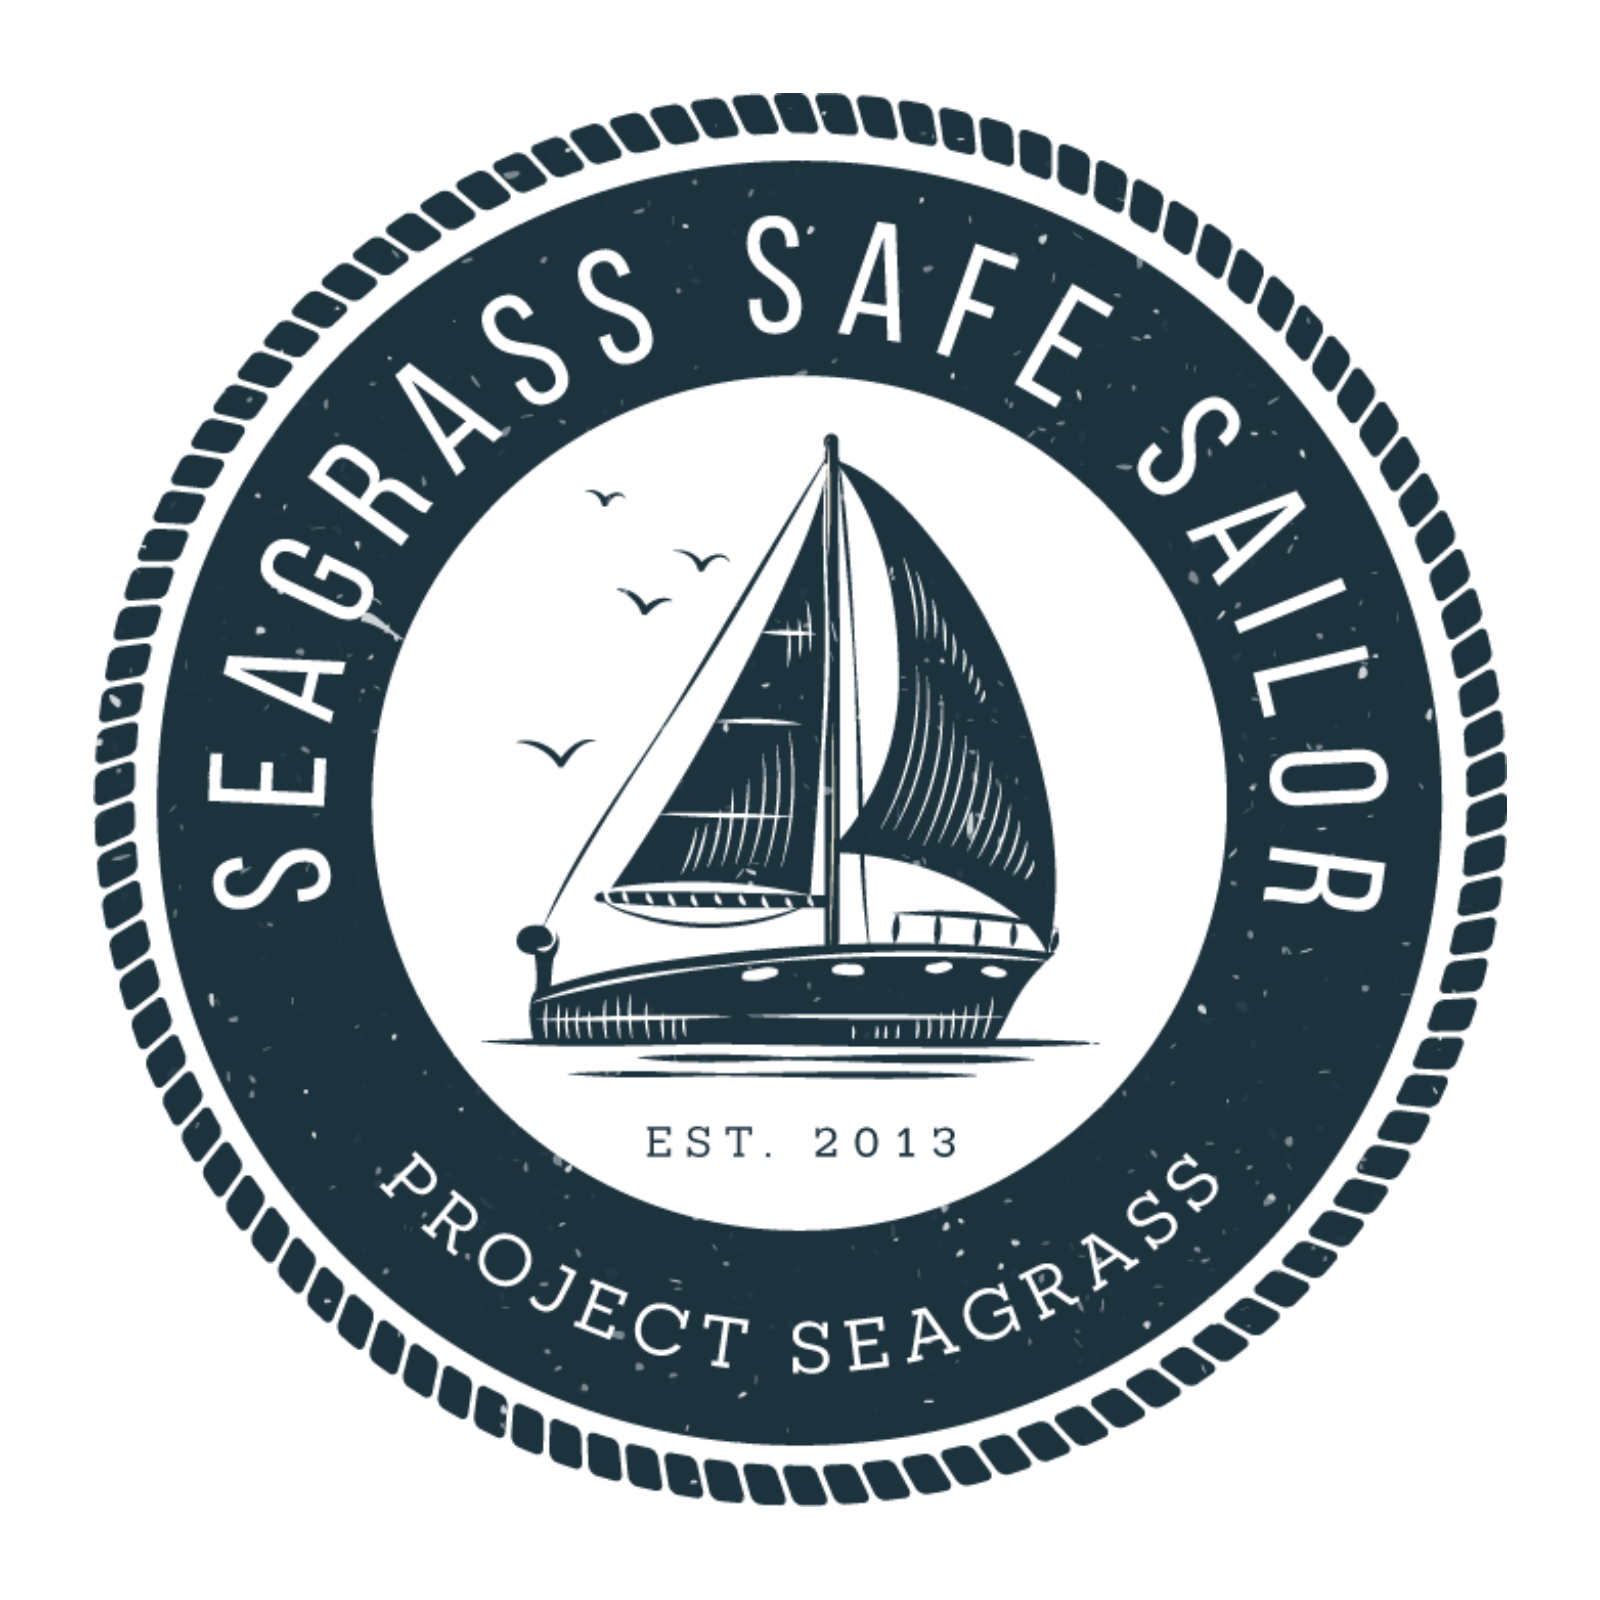 A logo for Seagrass Safe Sailor